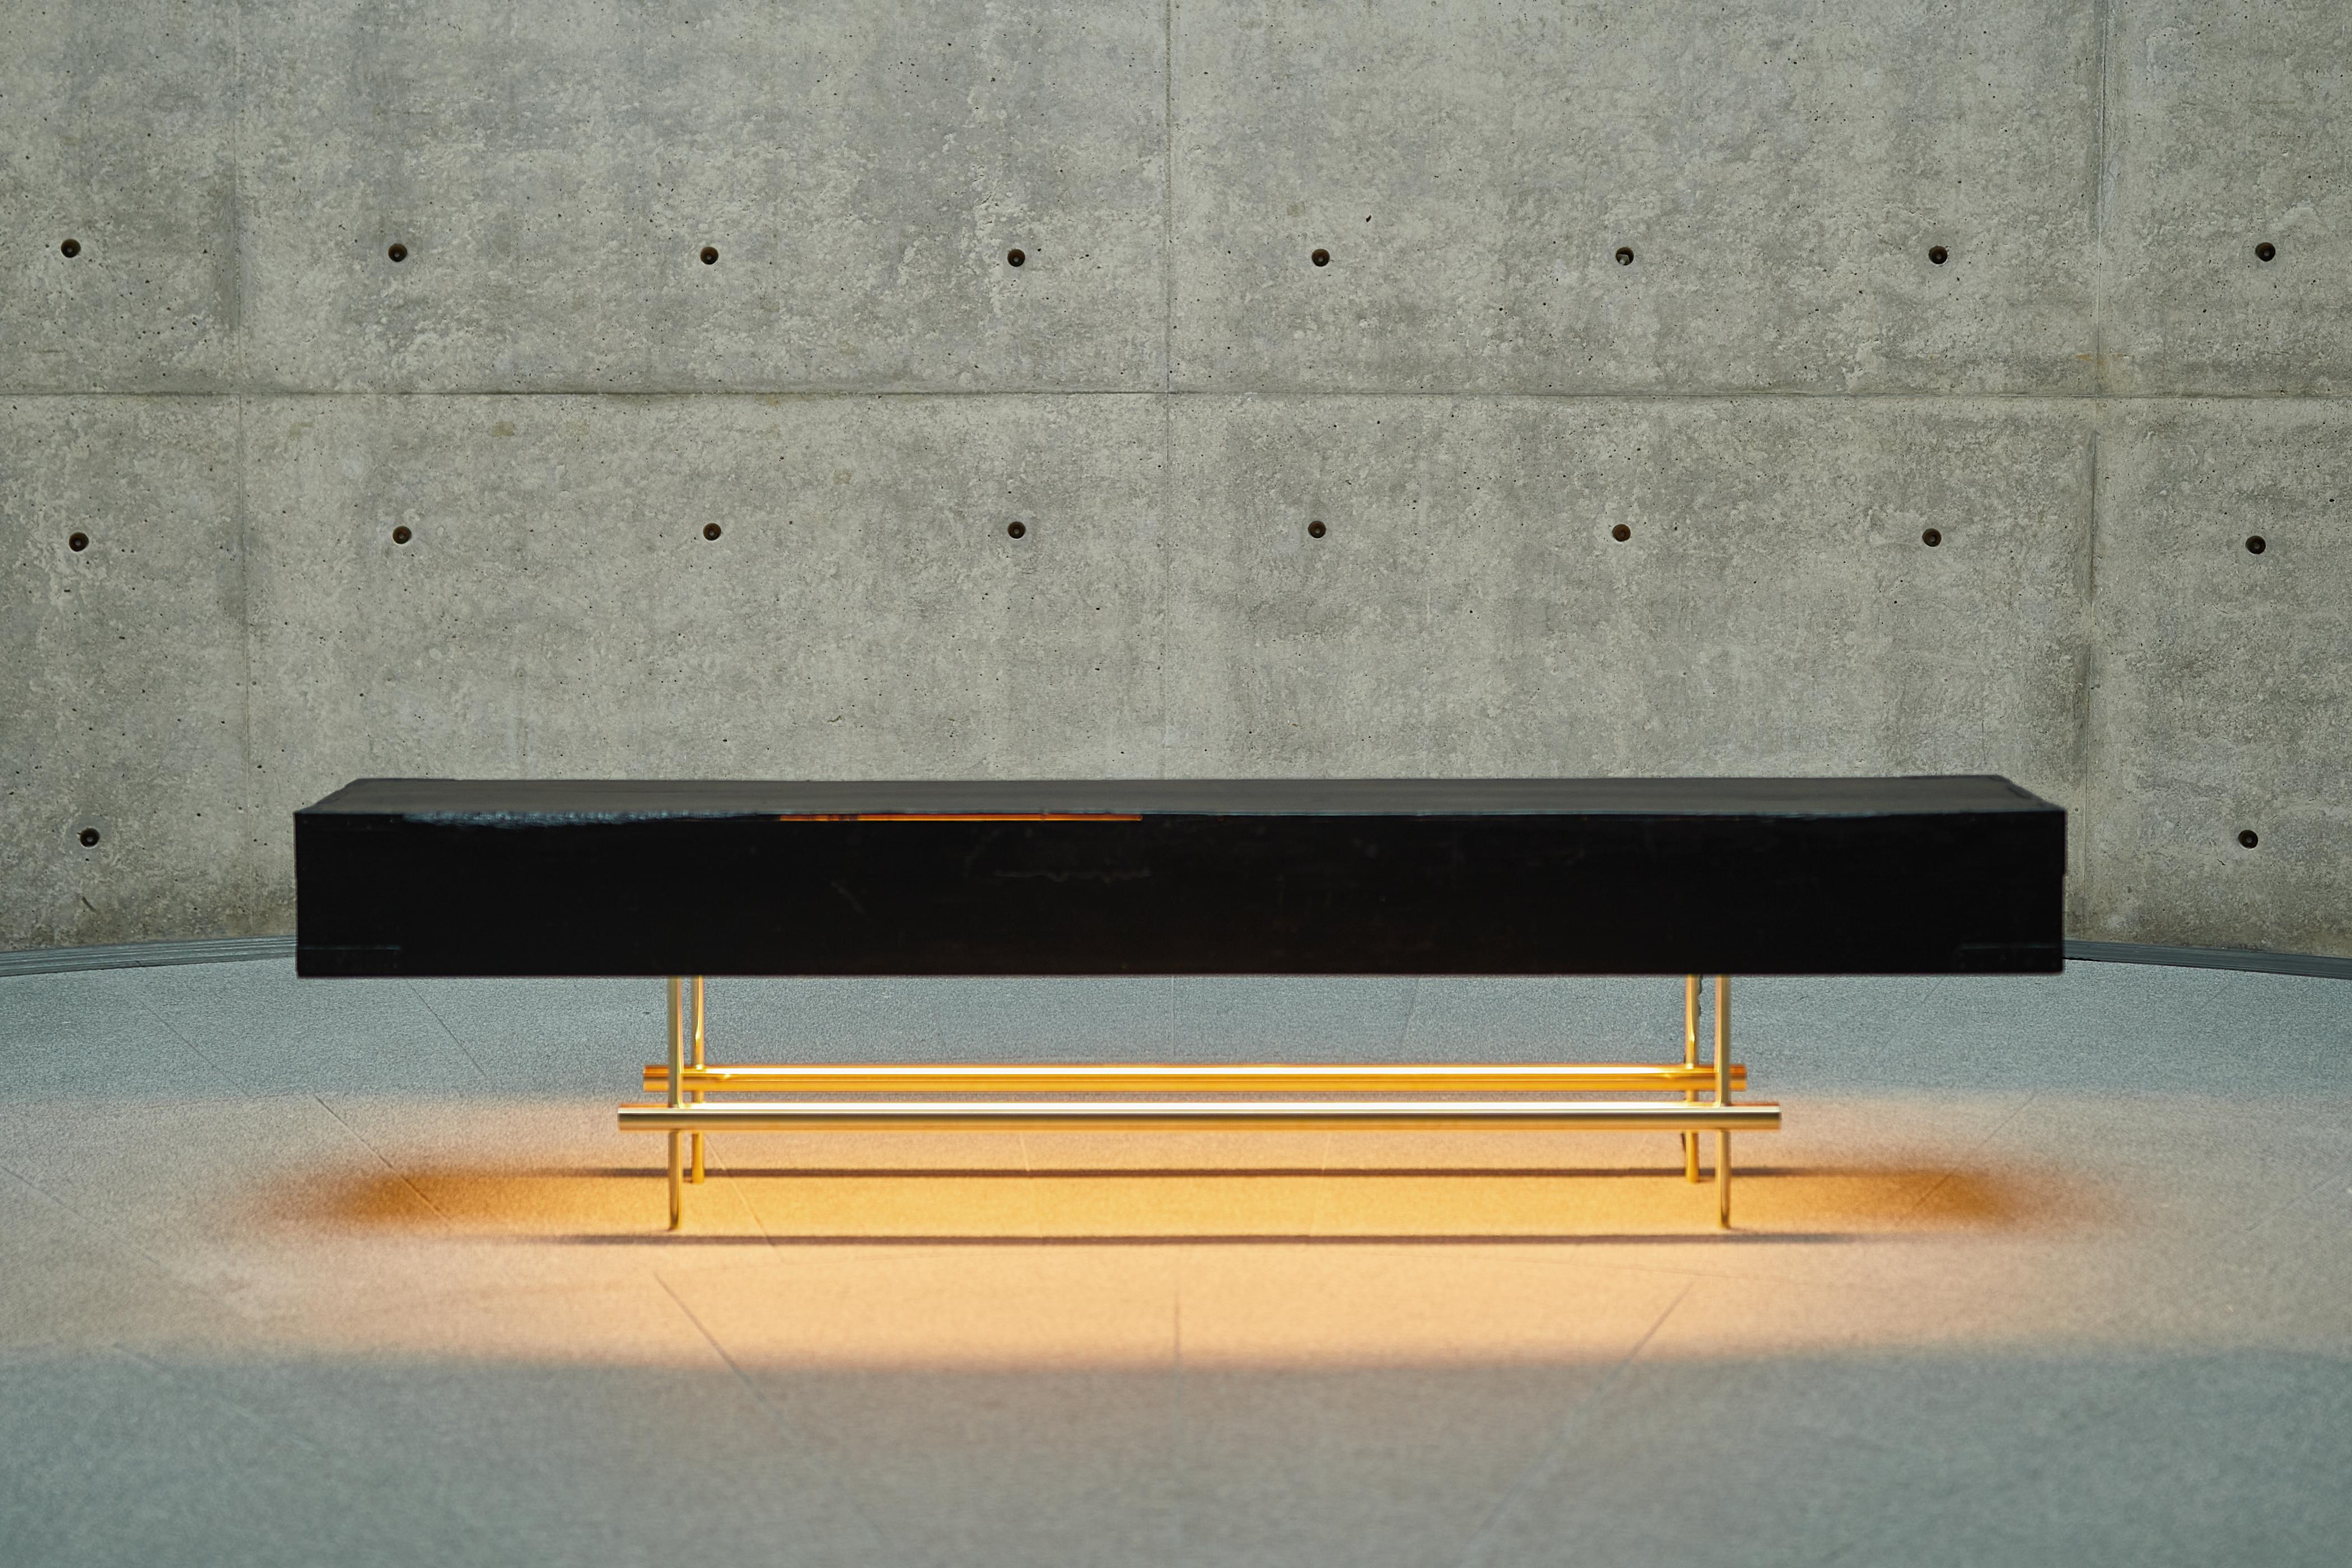 Table lumineuse console conçue par Ryosuke Harashima.
Nom : How deep the dark.
Collection : Stillife
Une table basse par morphing d'un couvercle de boîte en bois qui stocke deux paravents japonais en or. Les lumières soulignent l'attrait du noir,